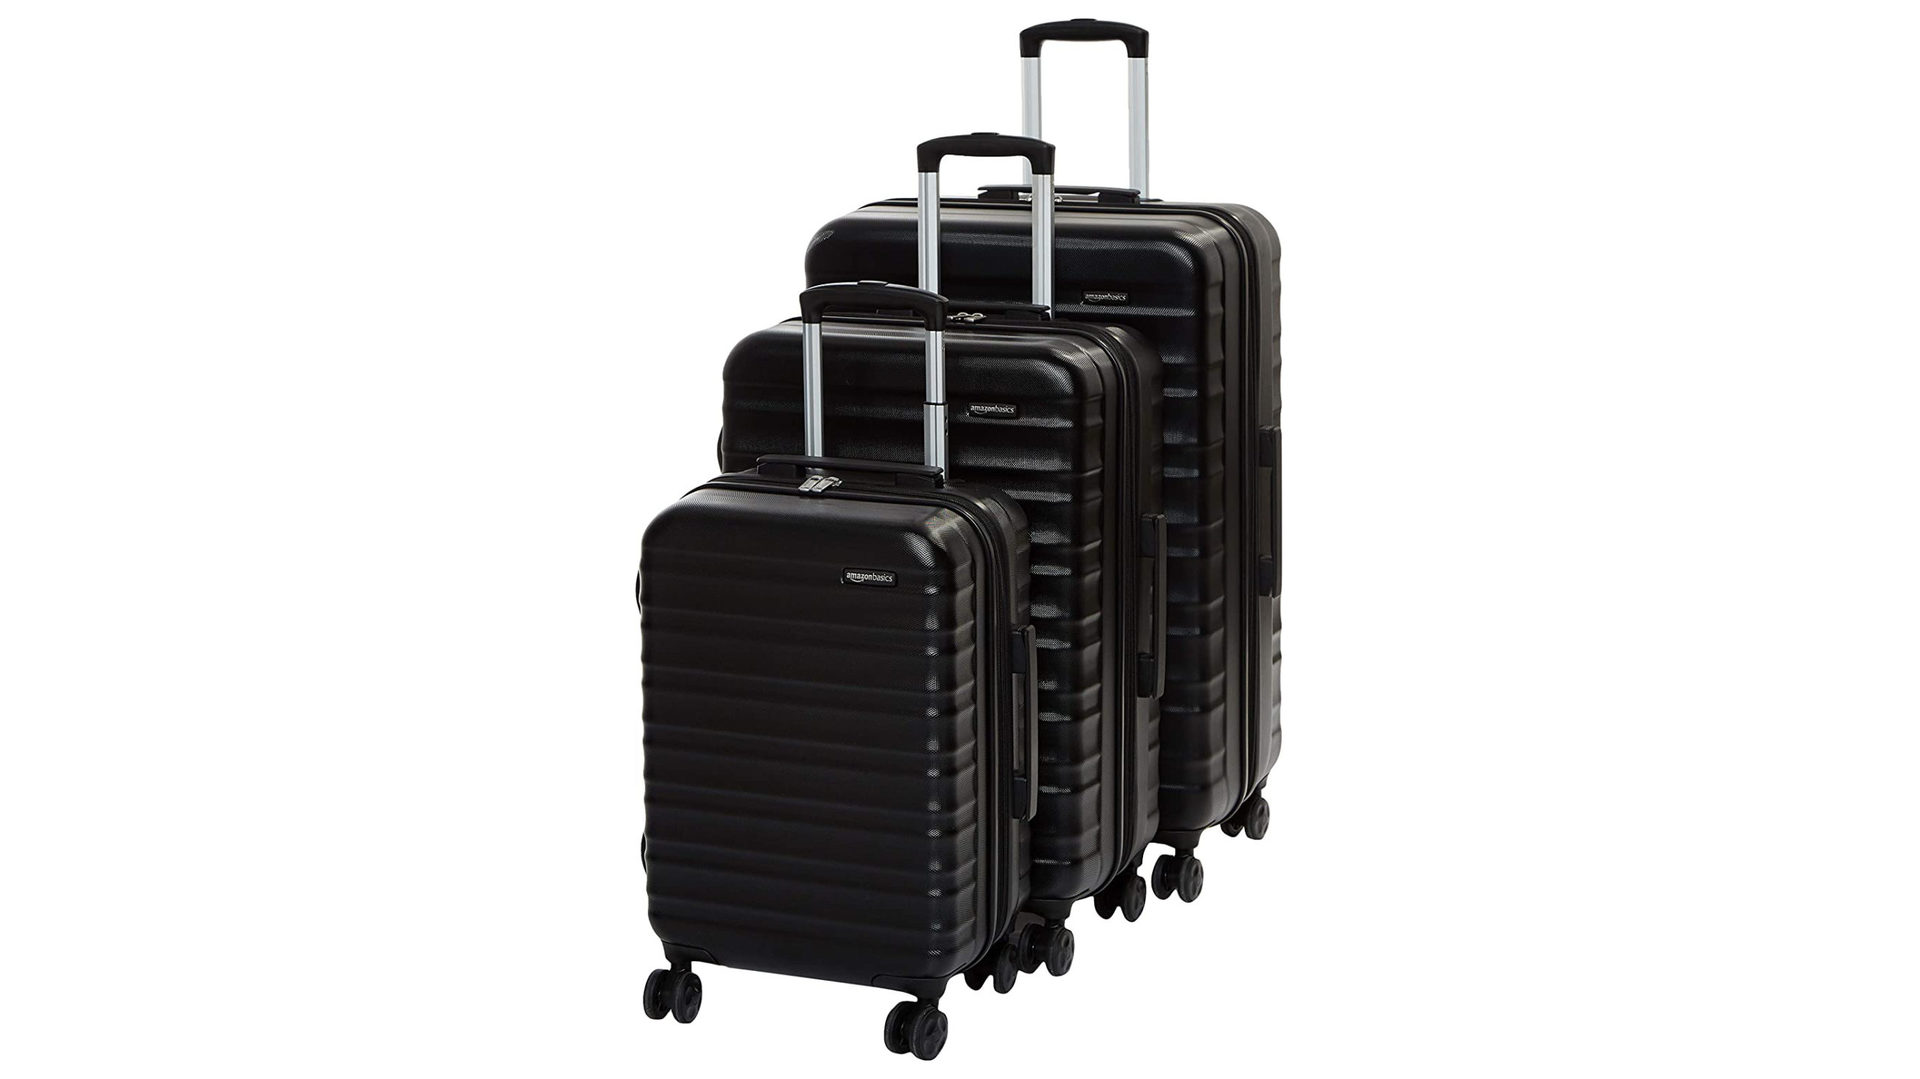 AmazonBasics luggage - The best travel gadgets